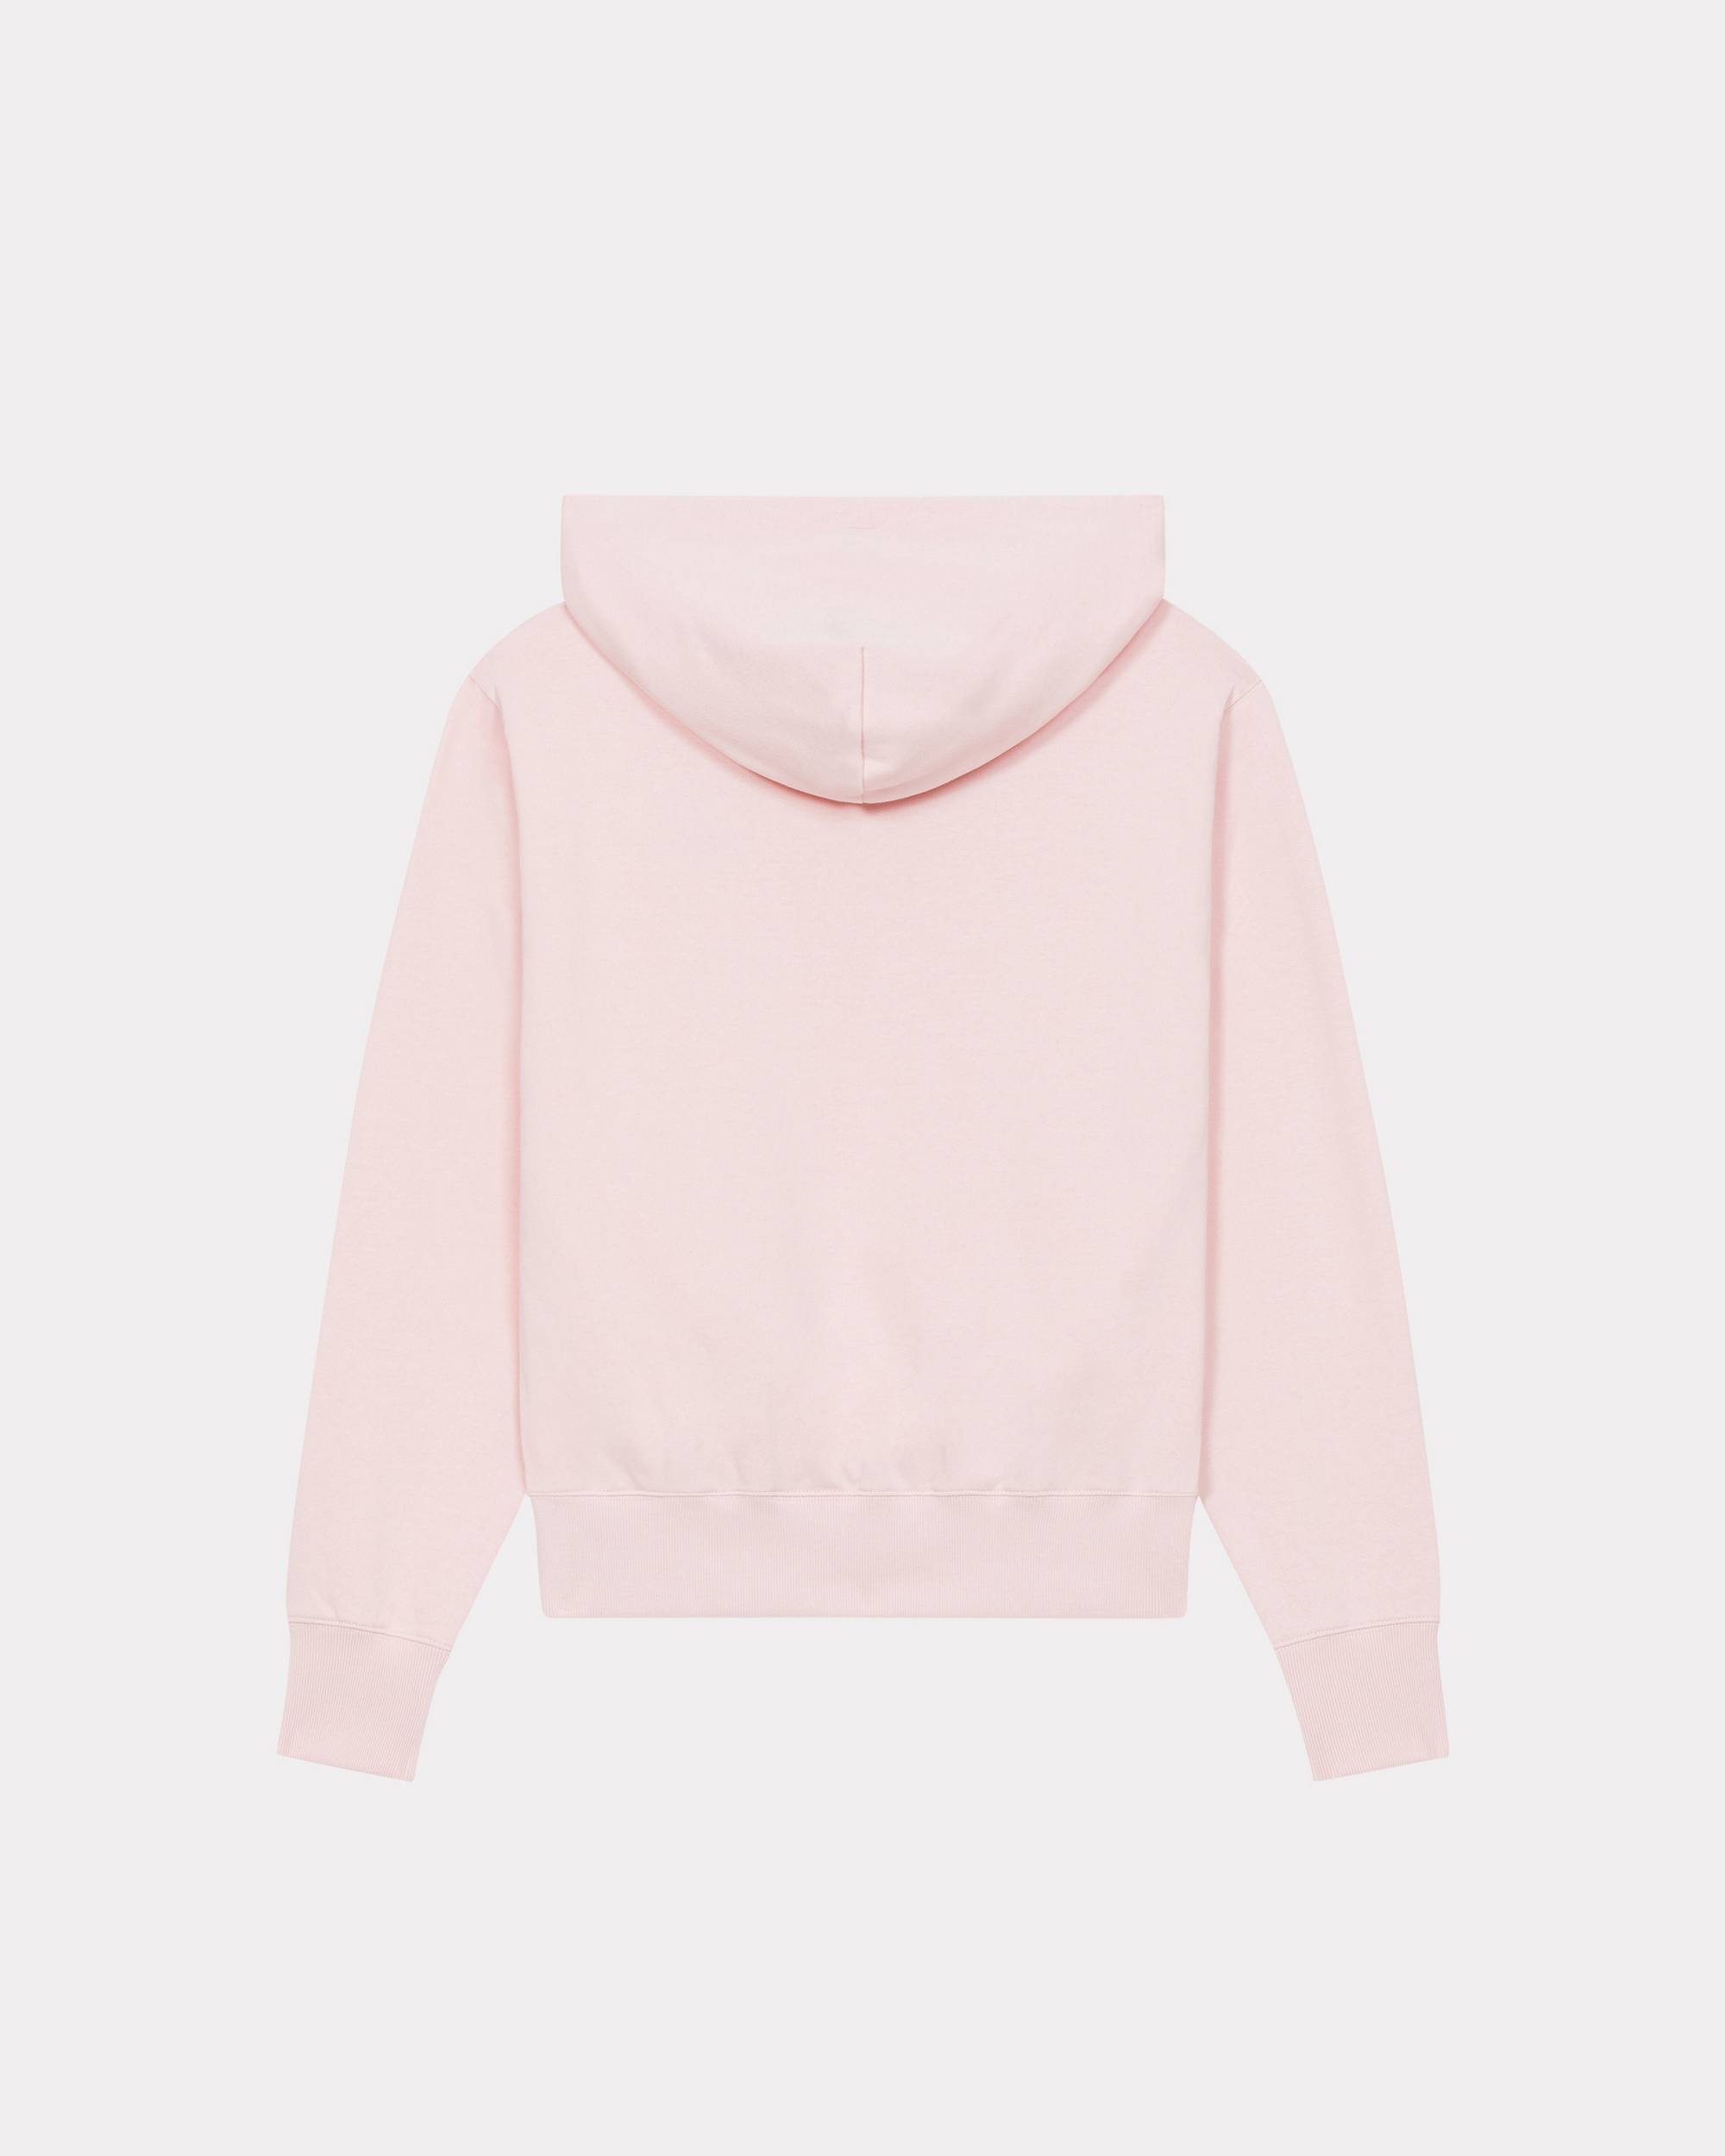 'BOKE FLOWER' motif hooded sweatshirt - 2